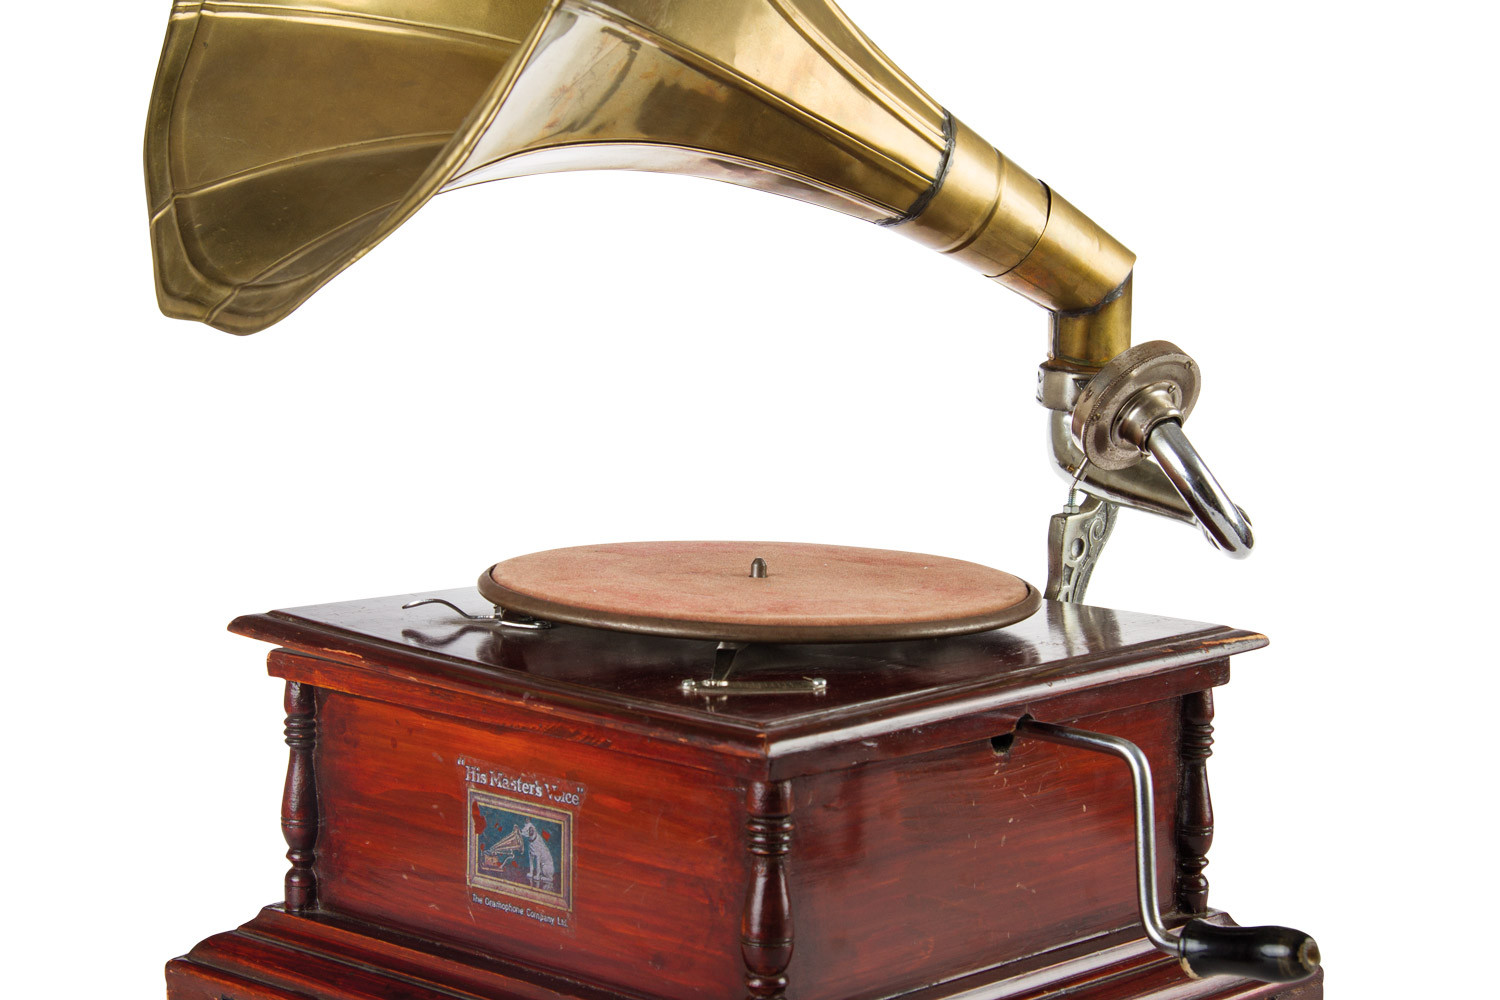 Grammofono vintage, ornamenti nostalgici in stile europeo con